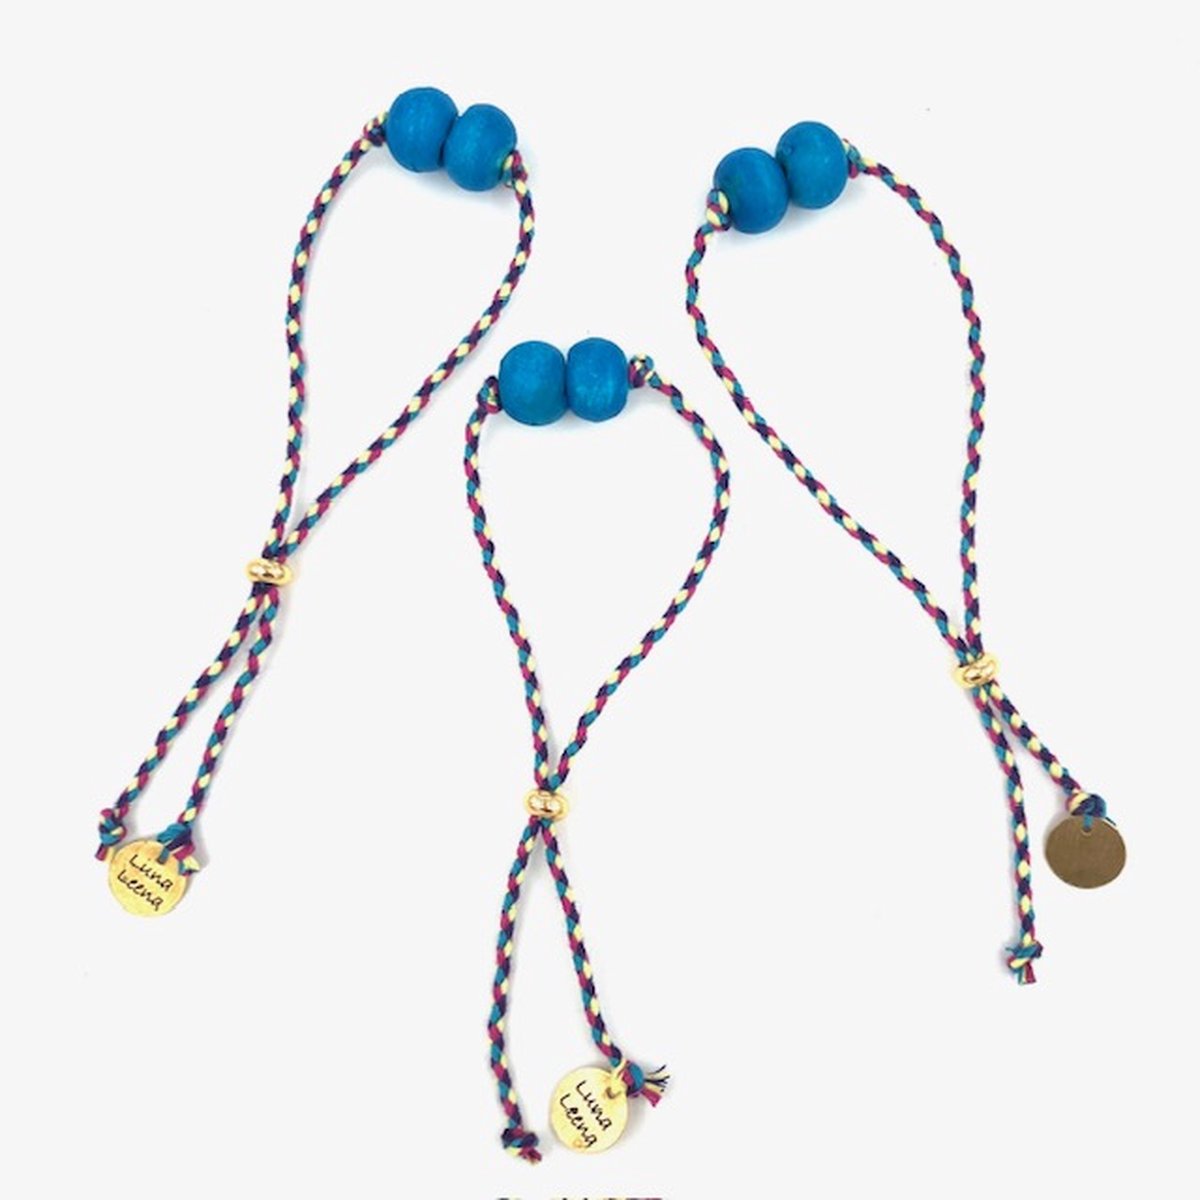 Luna-Leena duurzame armband blauw - L28cm - gerecycled - houten kralen van bestaande kettingen uit Nepal - one size - handgemaakt in Nepal - armbanden - bracelet blue - trendy - feestje - voor elke dag - vintage look - accessoire - cadeau - sieraad